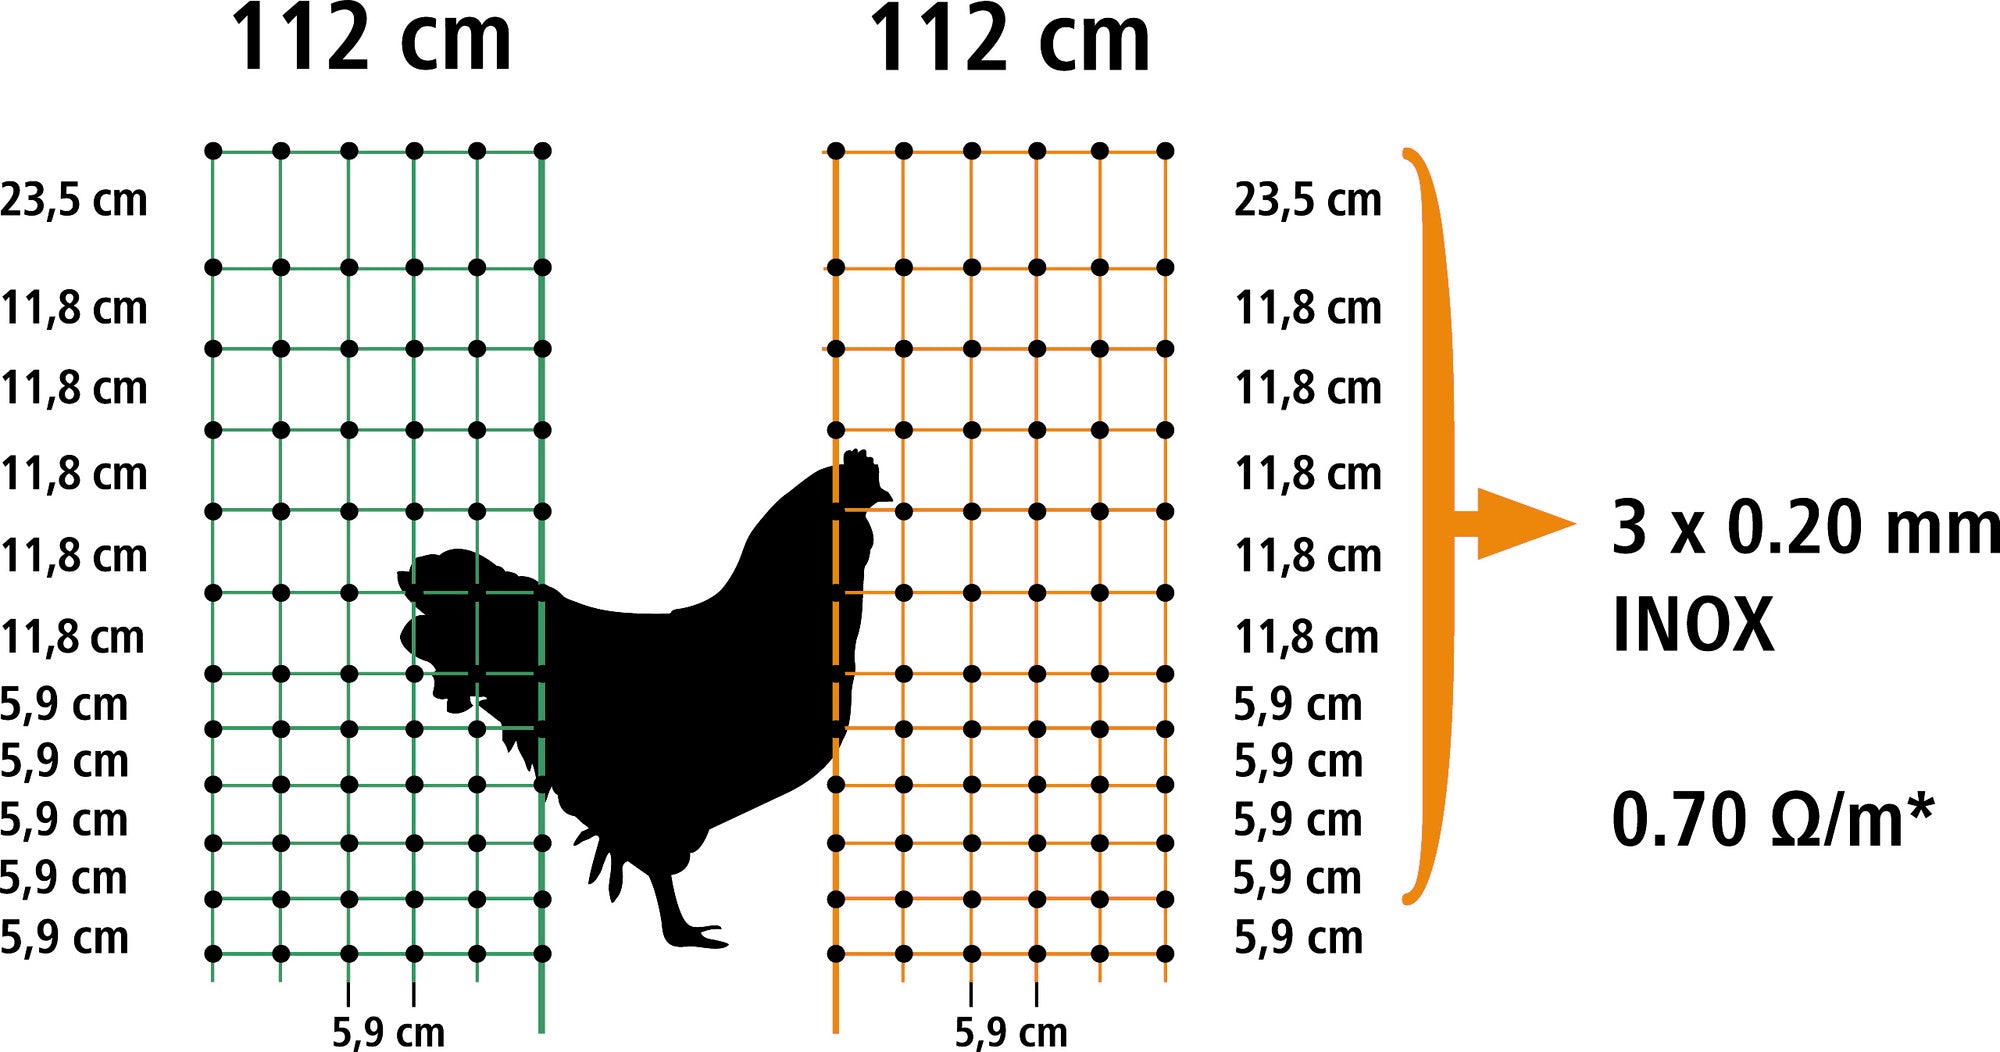 Hühnerzaun mit Strom 112 cm - grün - elektrifizierbar